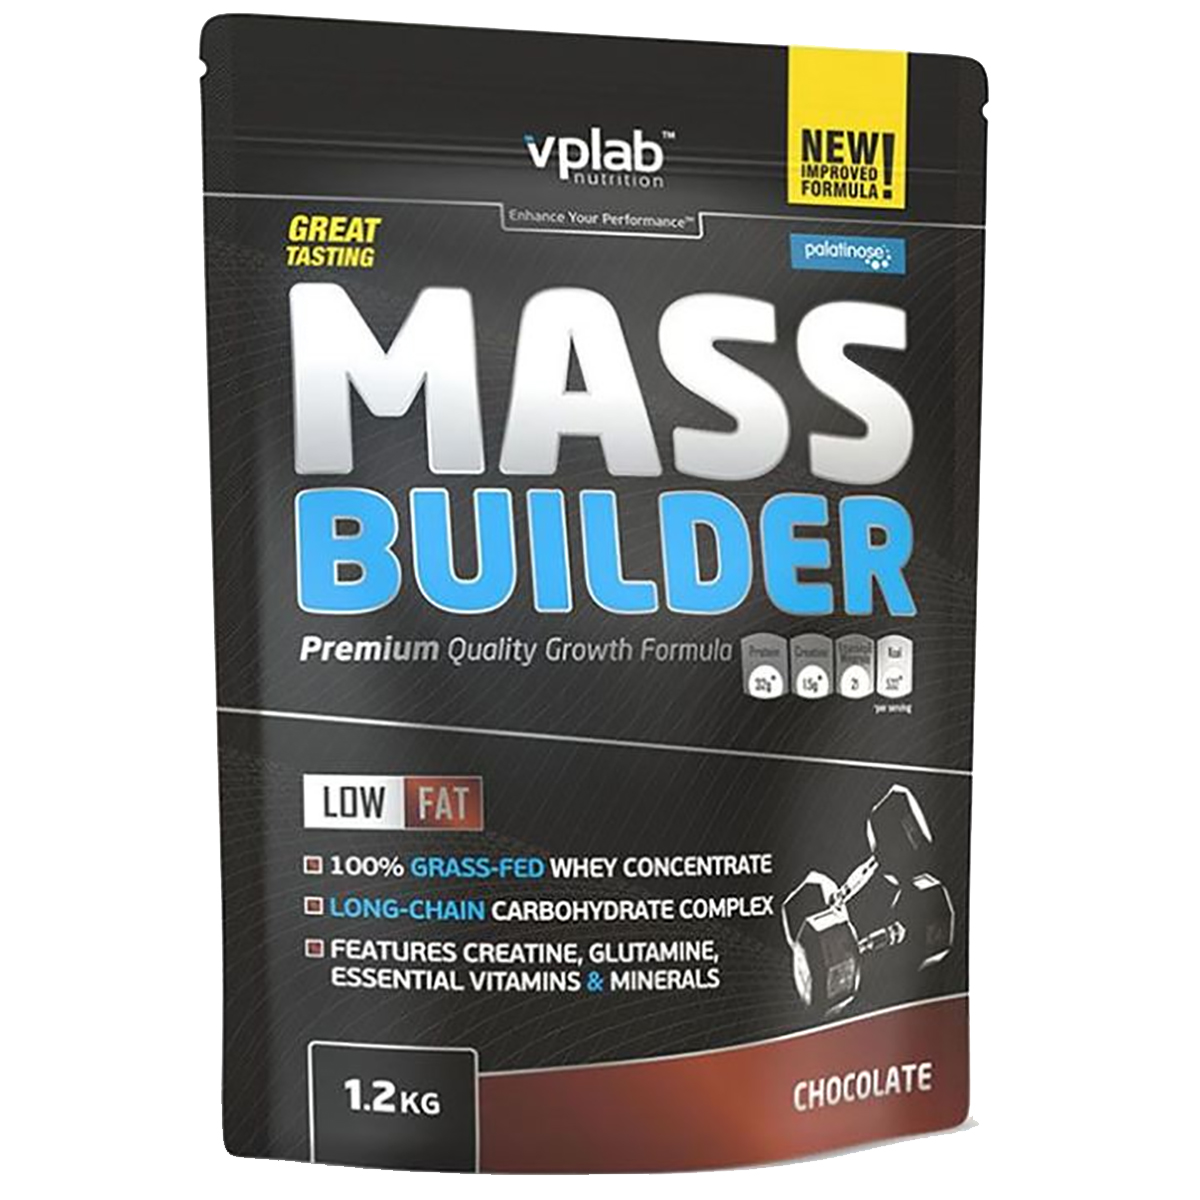 Гейнер Mass Builder, вкус «Шоколад», 1, 2 кг, VPLab, VPLab Nutrition  - купить